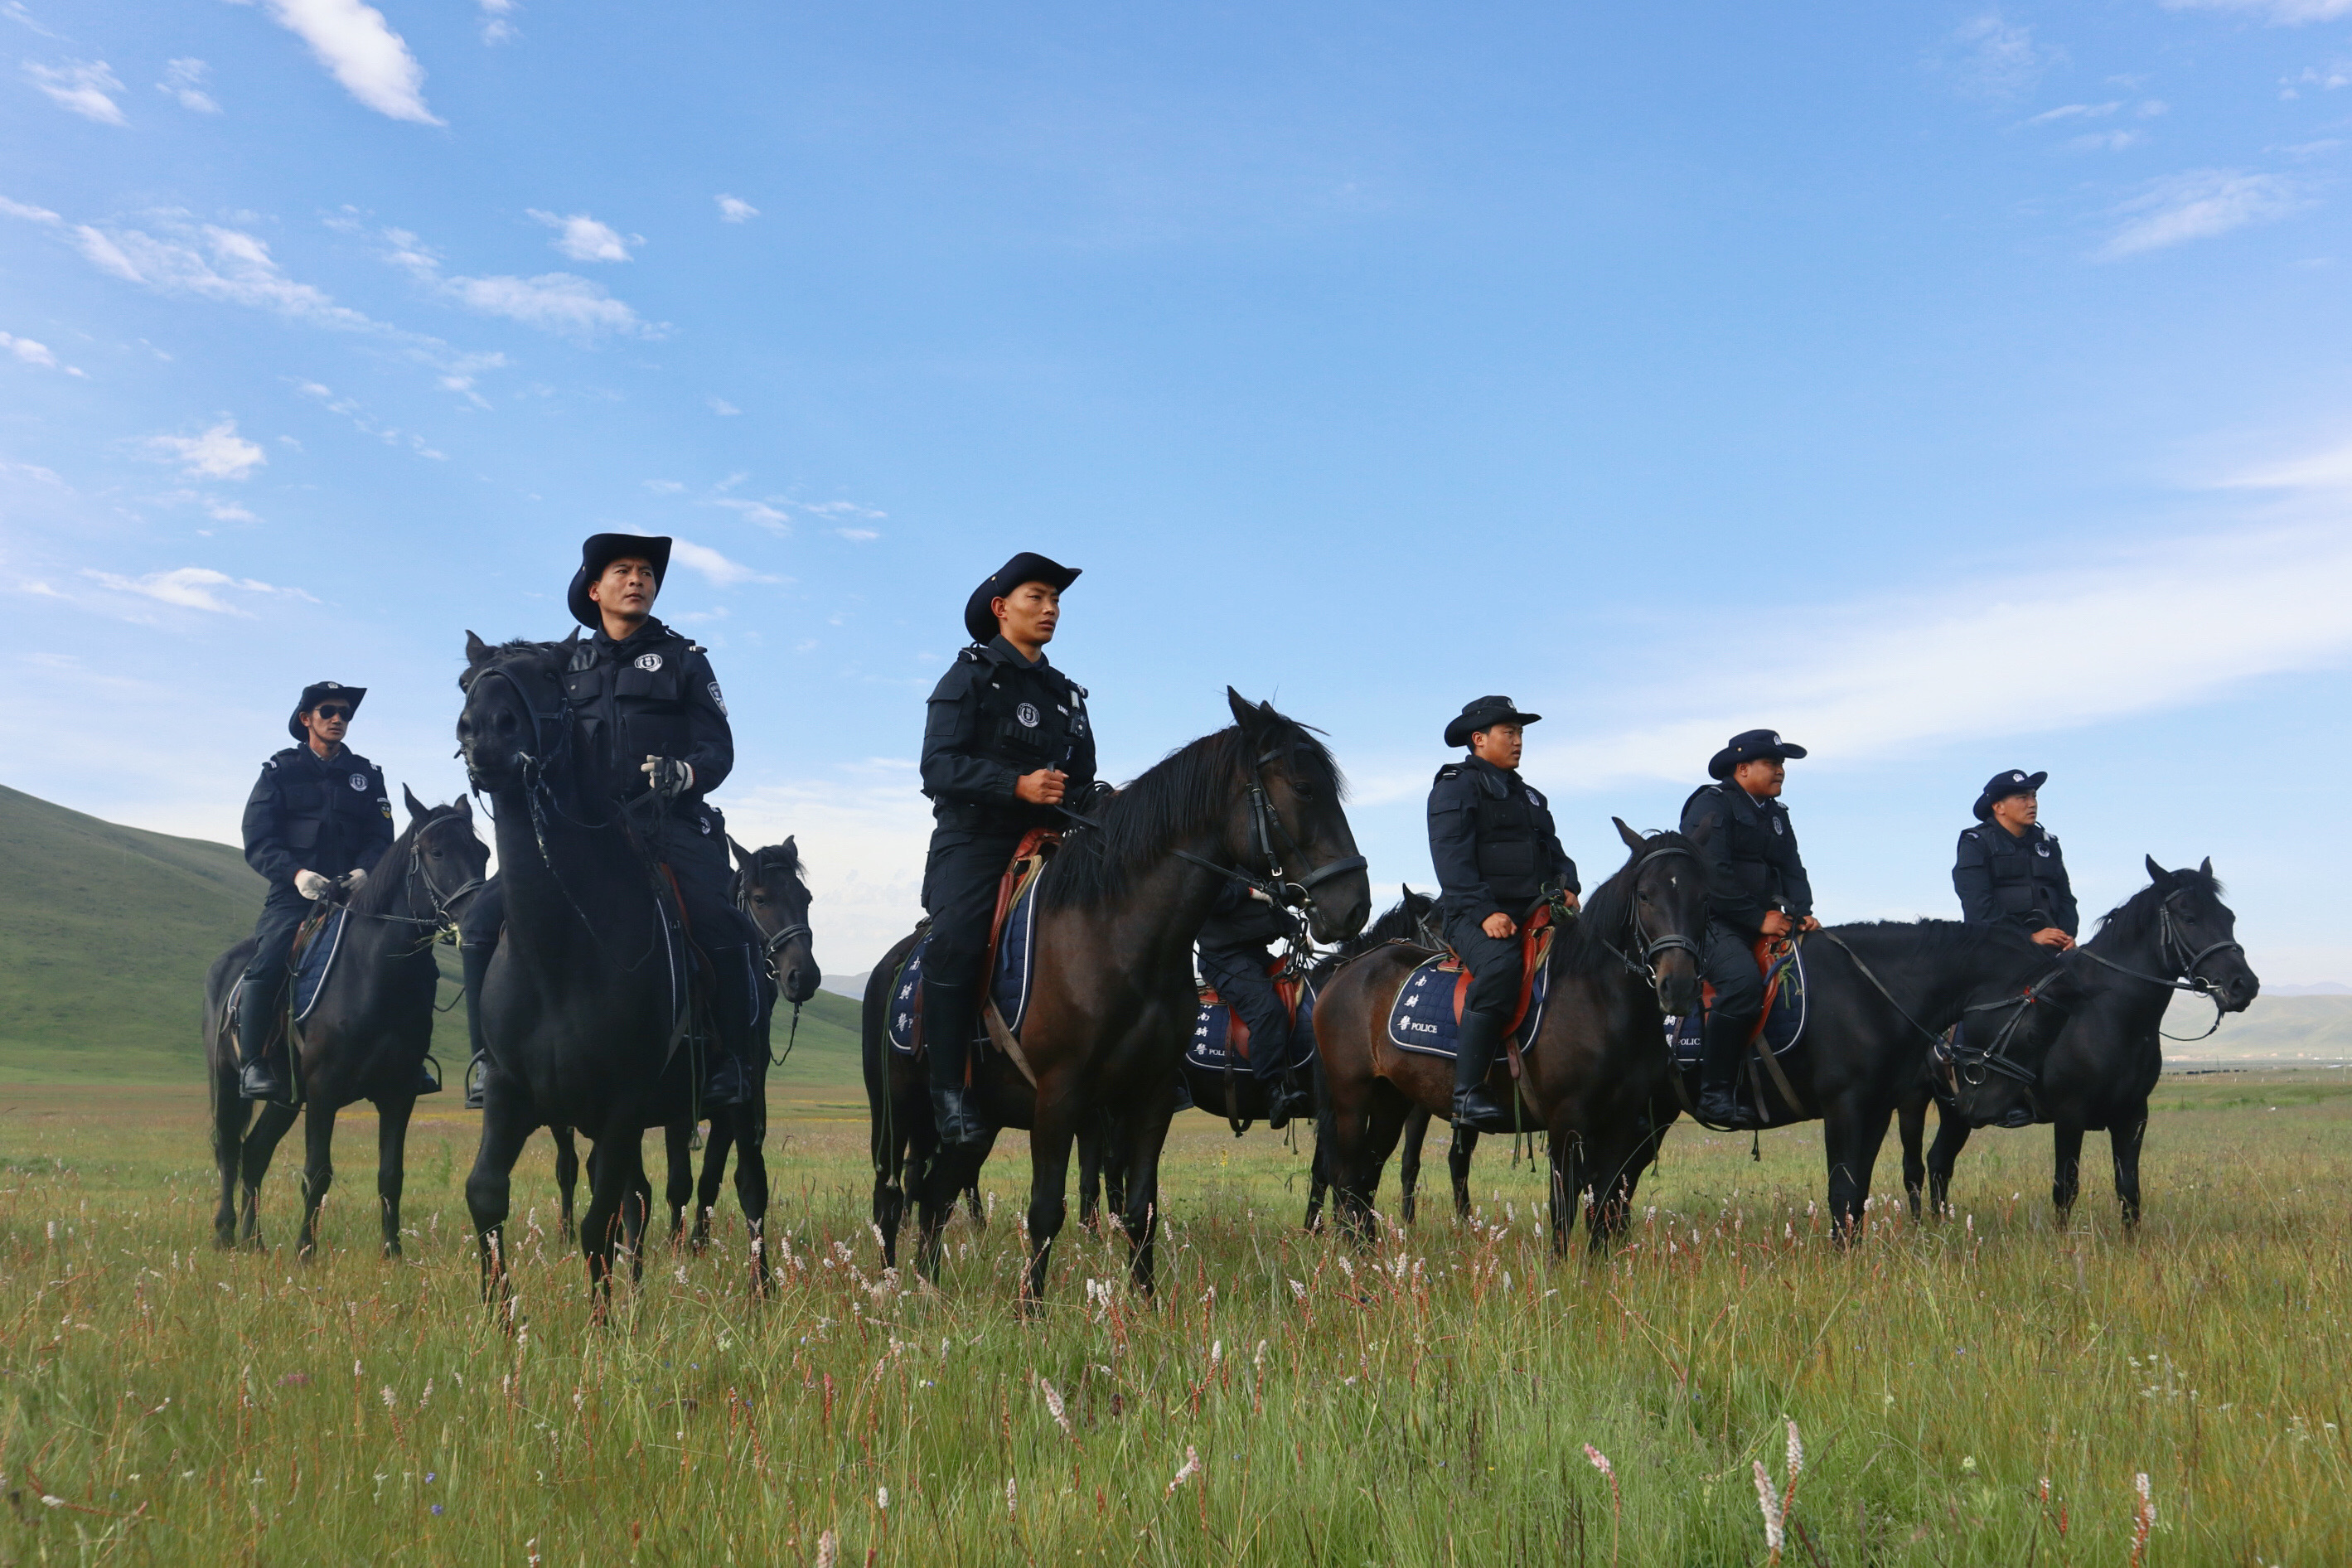 马背上的骑警队:为草原牧民守平安